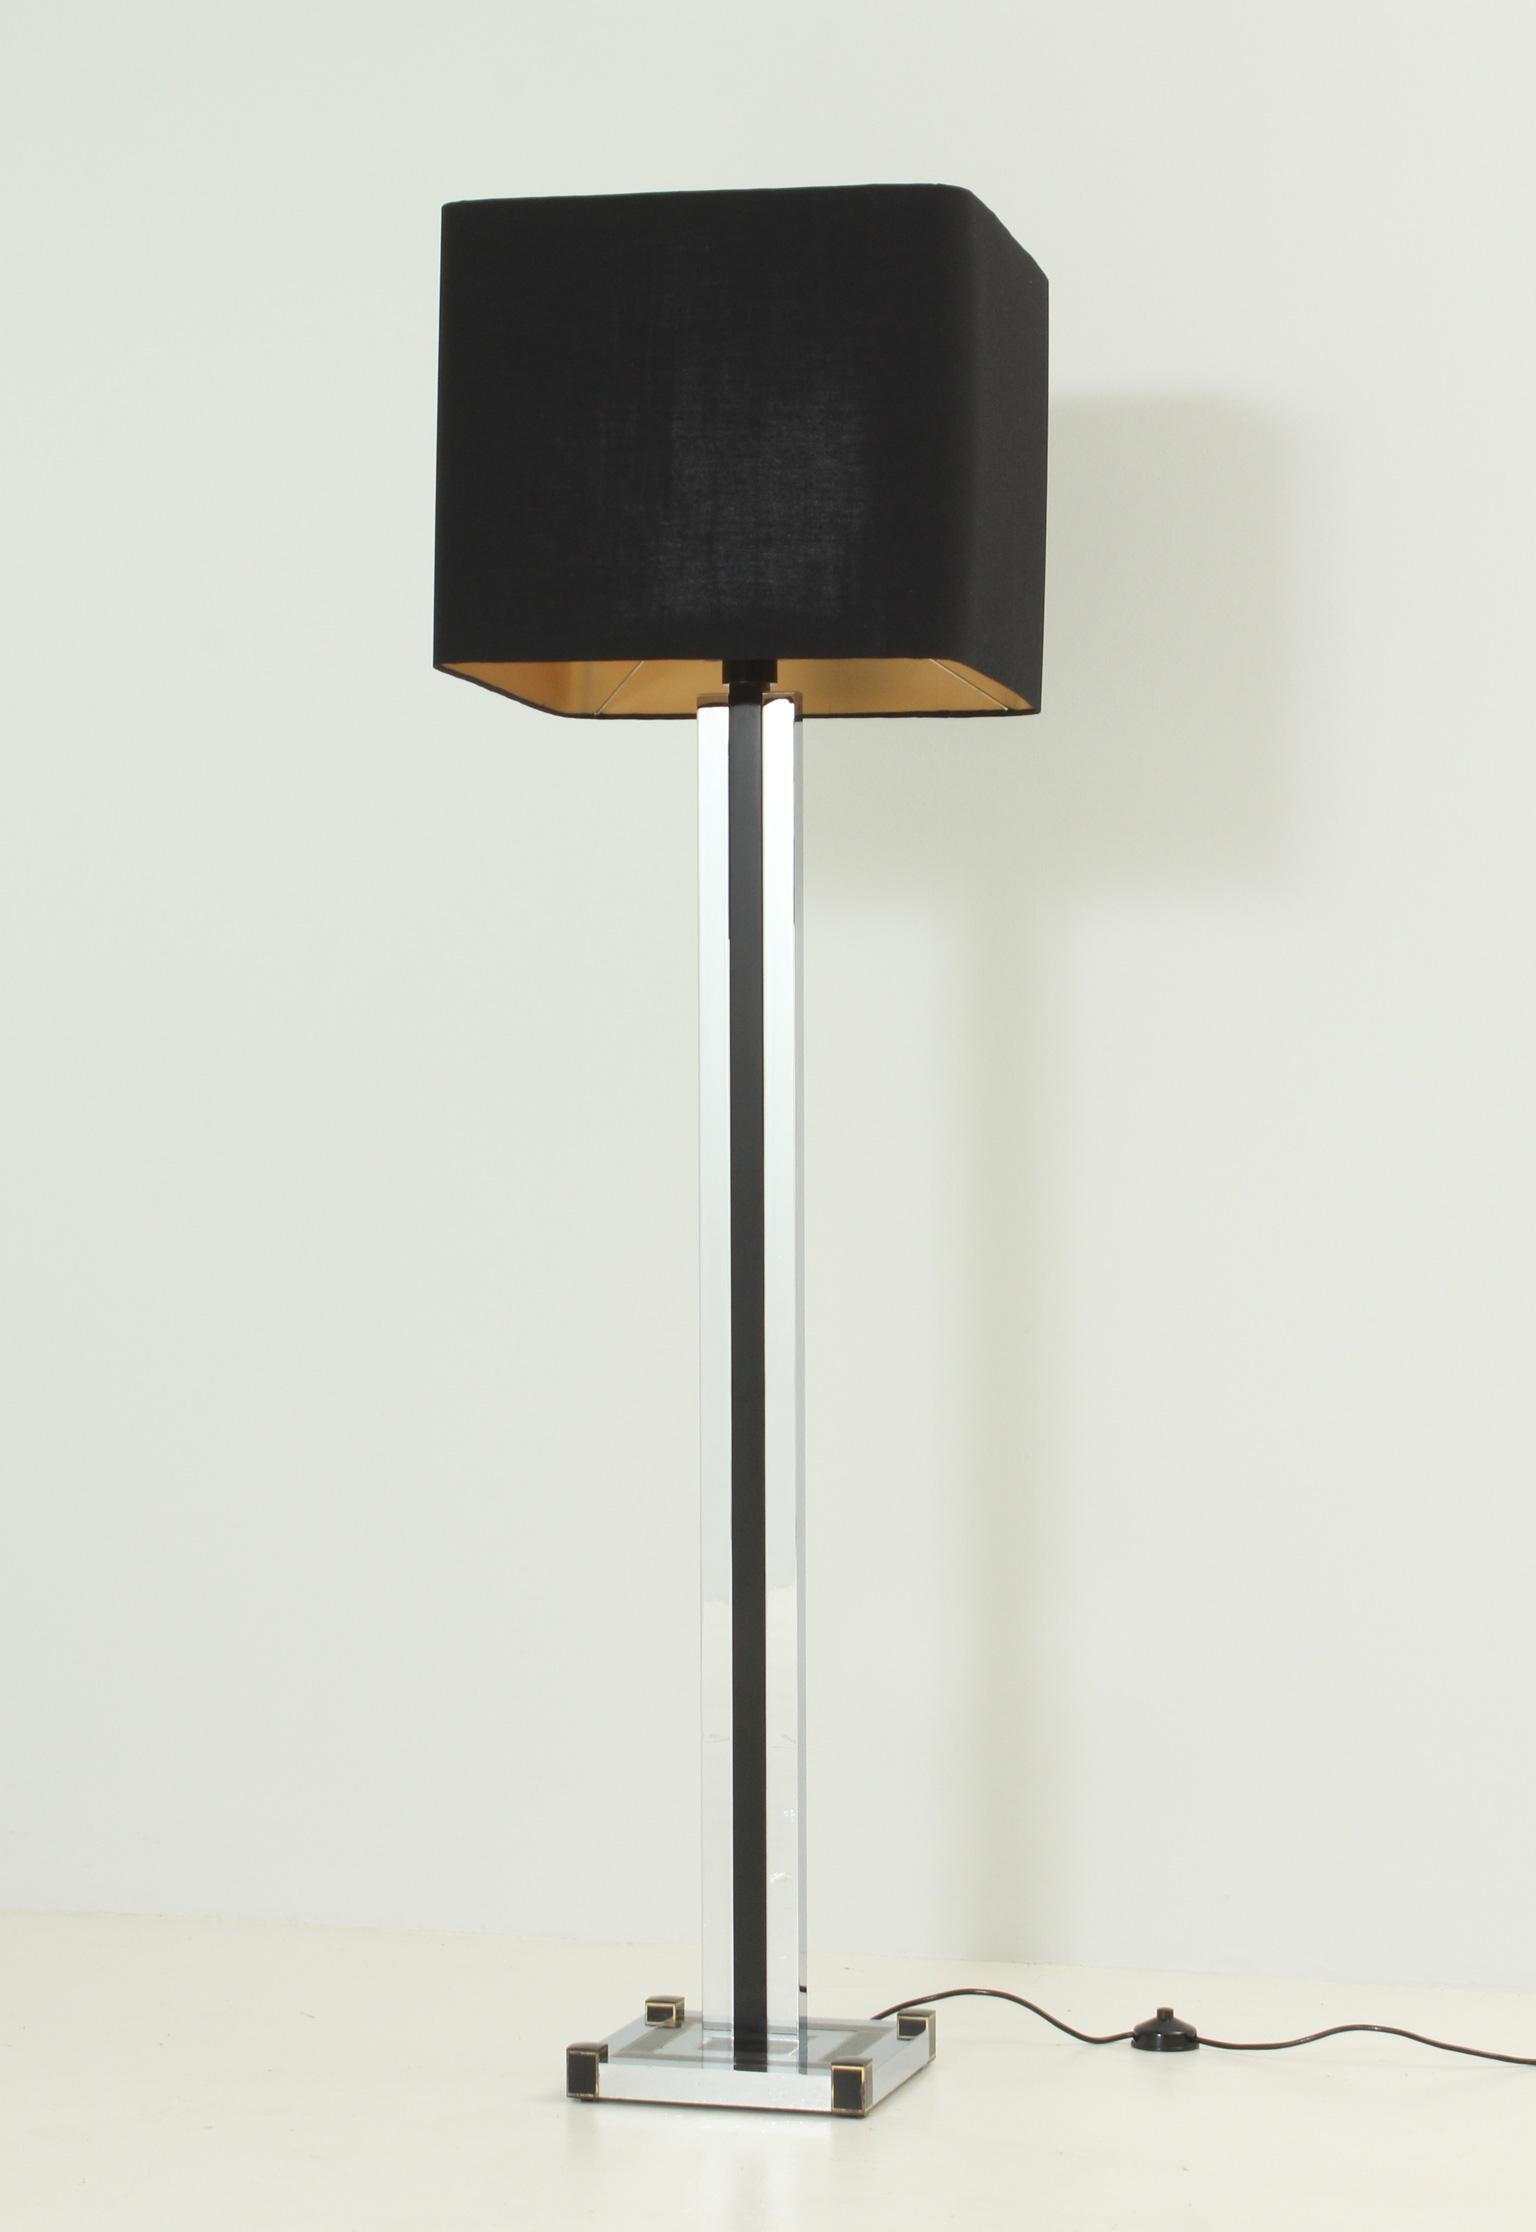 Lampadaire conçu dans les années 1970 par Lumica, Espagne. Base en métal chromé, laiton et métal laqué supportant trois ampoules et un abat-jour carré en tissu neuf.